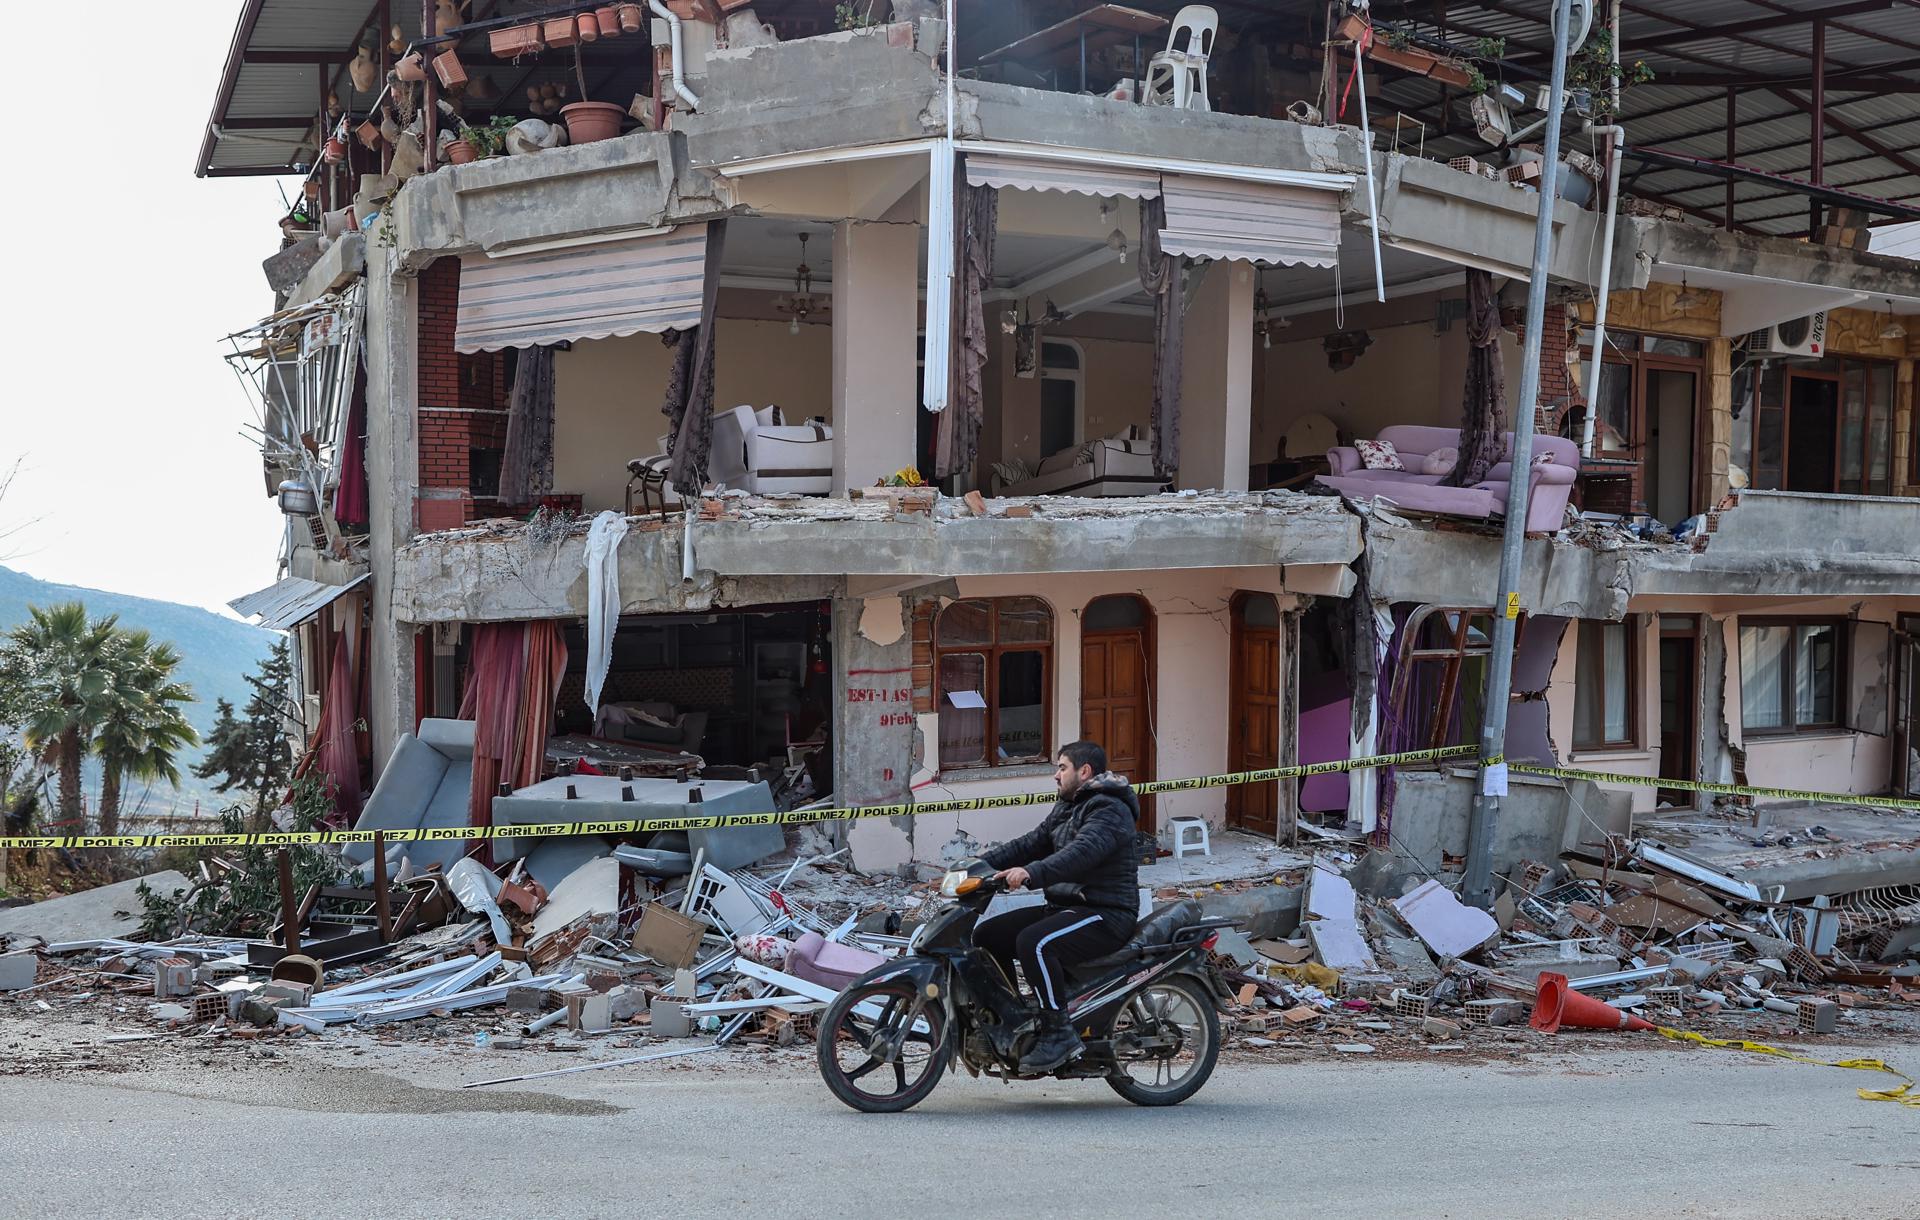 FOTO REFERENCIAL - HATAY, 22/02/2023.- Edificio destruido por terremoto que sacudió Turquía, cuya distancia con Tayikistán sería de unos tres mil kilómetros. EFE/ Erdem Sahin.